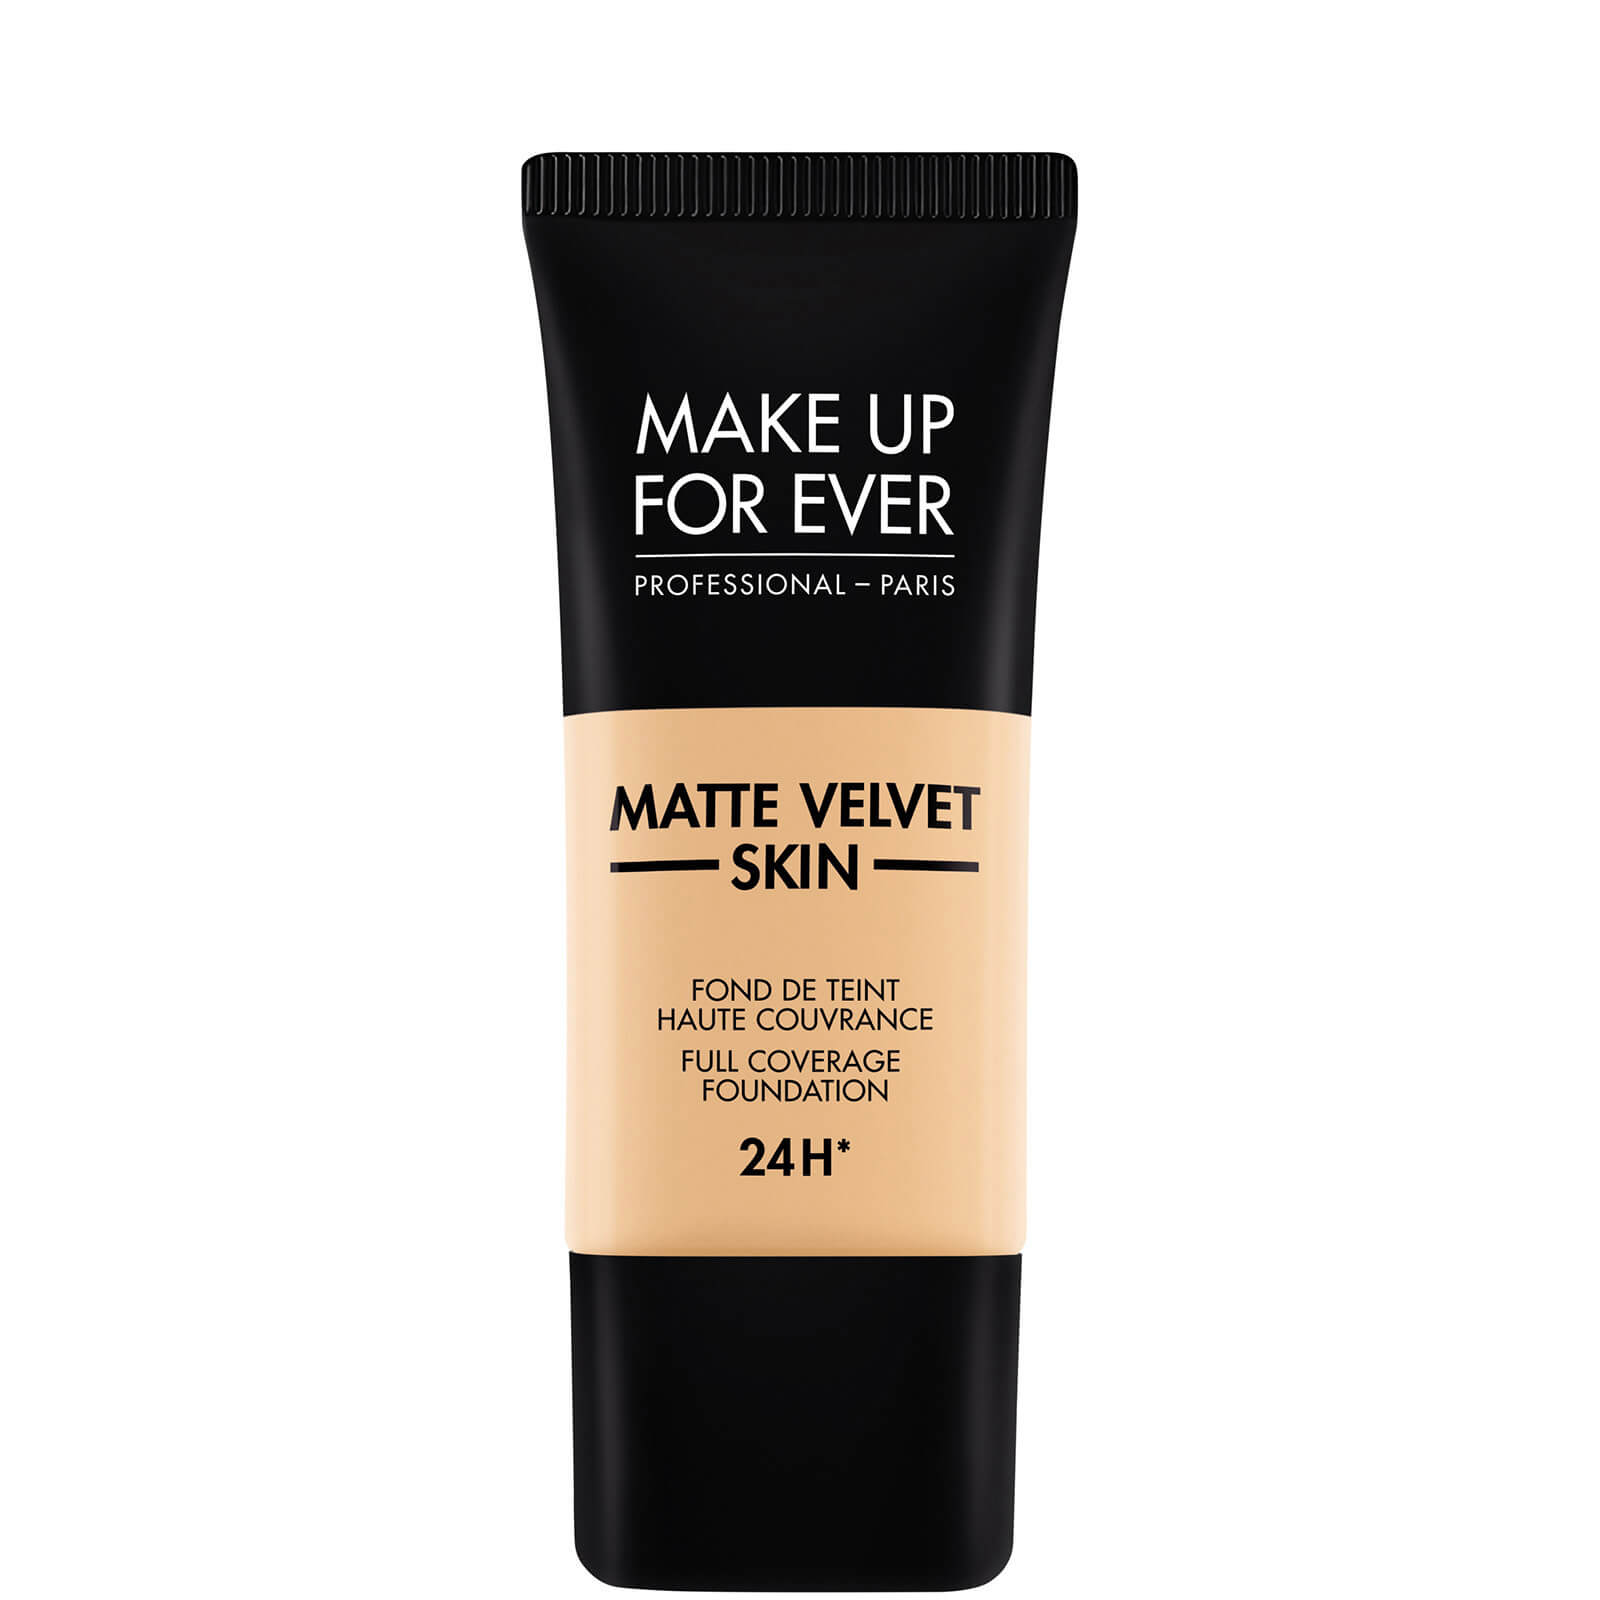 MAKE UP FOR EVER matte Velvet Skin Foundation 30ml (Various Shades) - - 235 Ivory beige